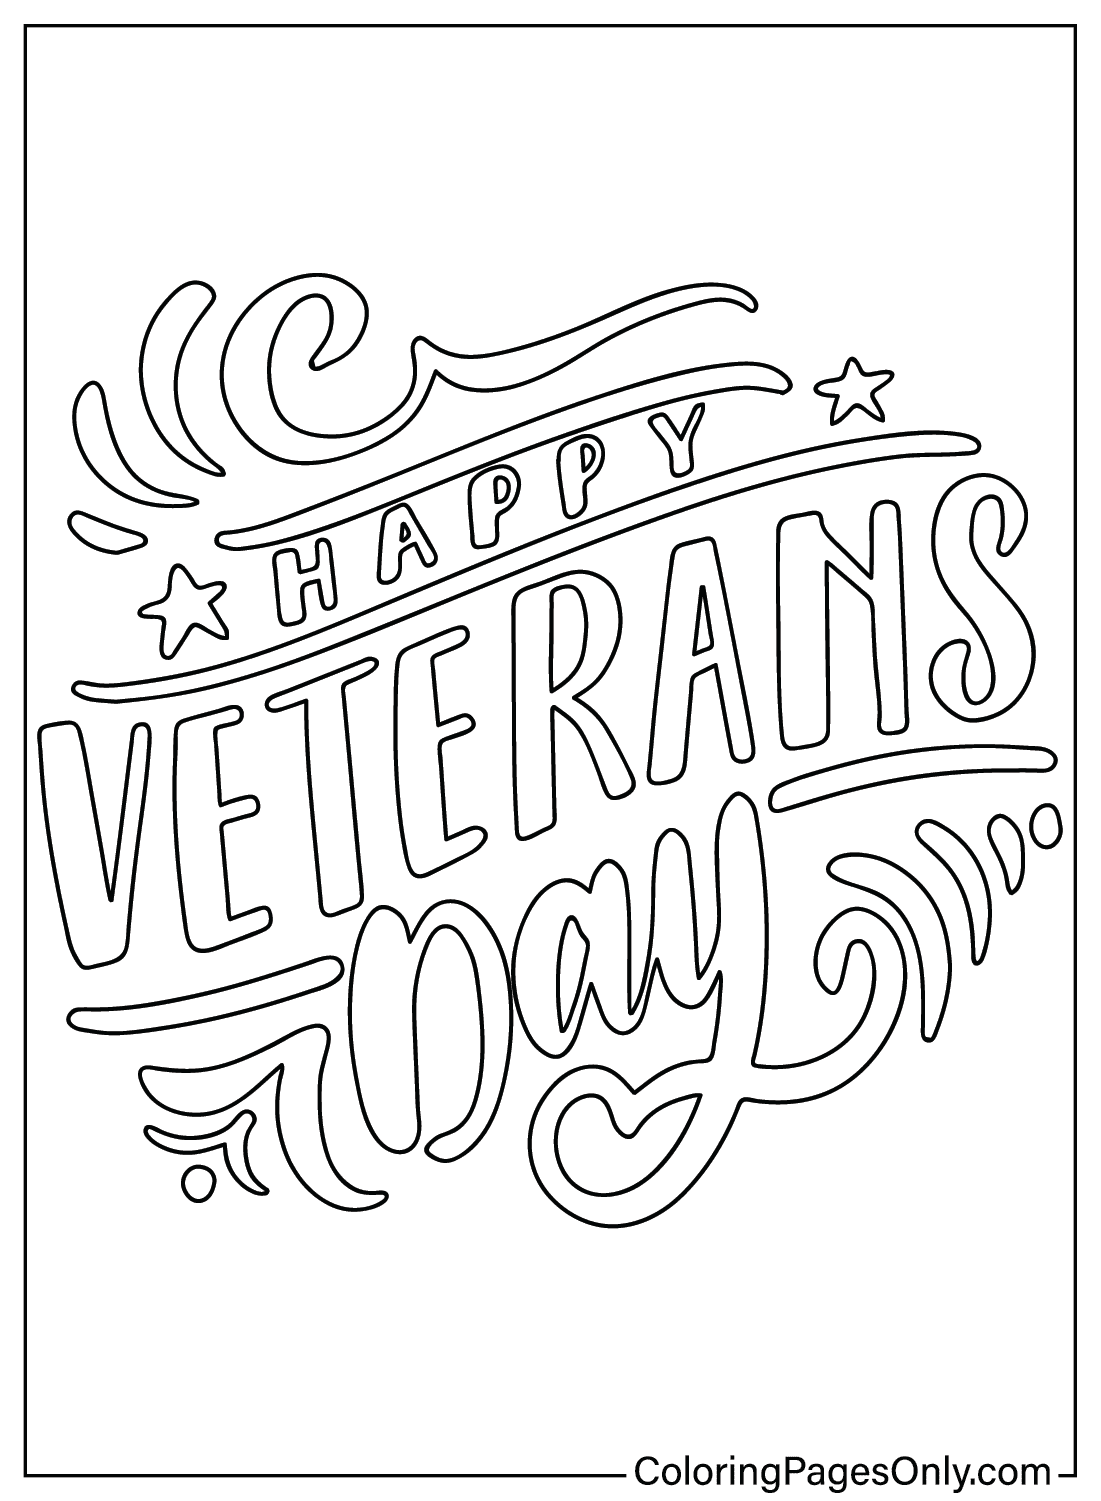 Página para colorir gratuita do Dia dos Veteranos do Dia dos Veteranos